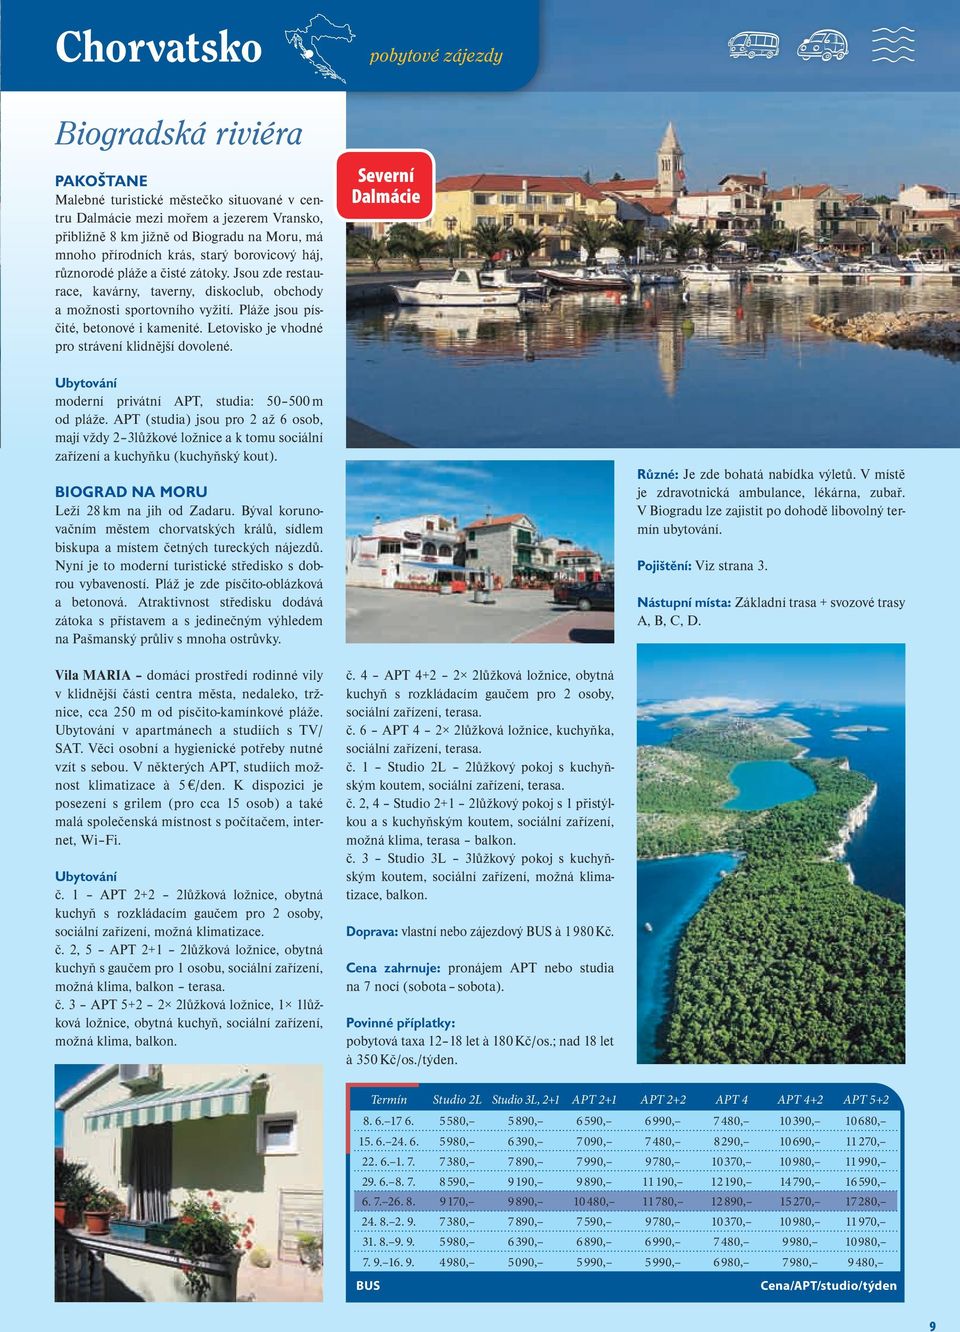 Letovisko je vhodné pro strávení klidnější dovolené. Severní Dalmácie moderní privátní APT, studia: 50 500 m od pláže.